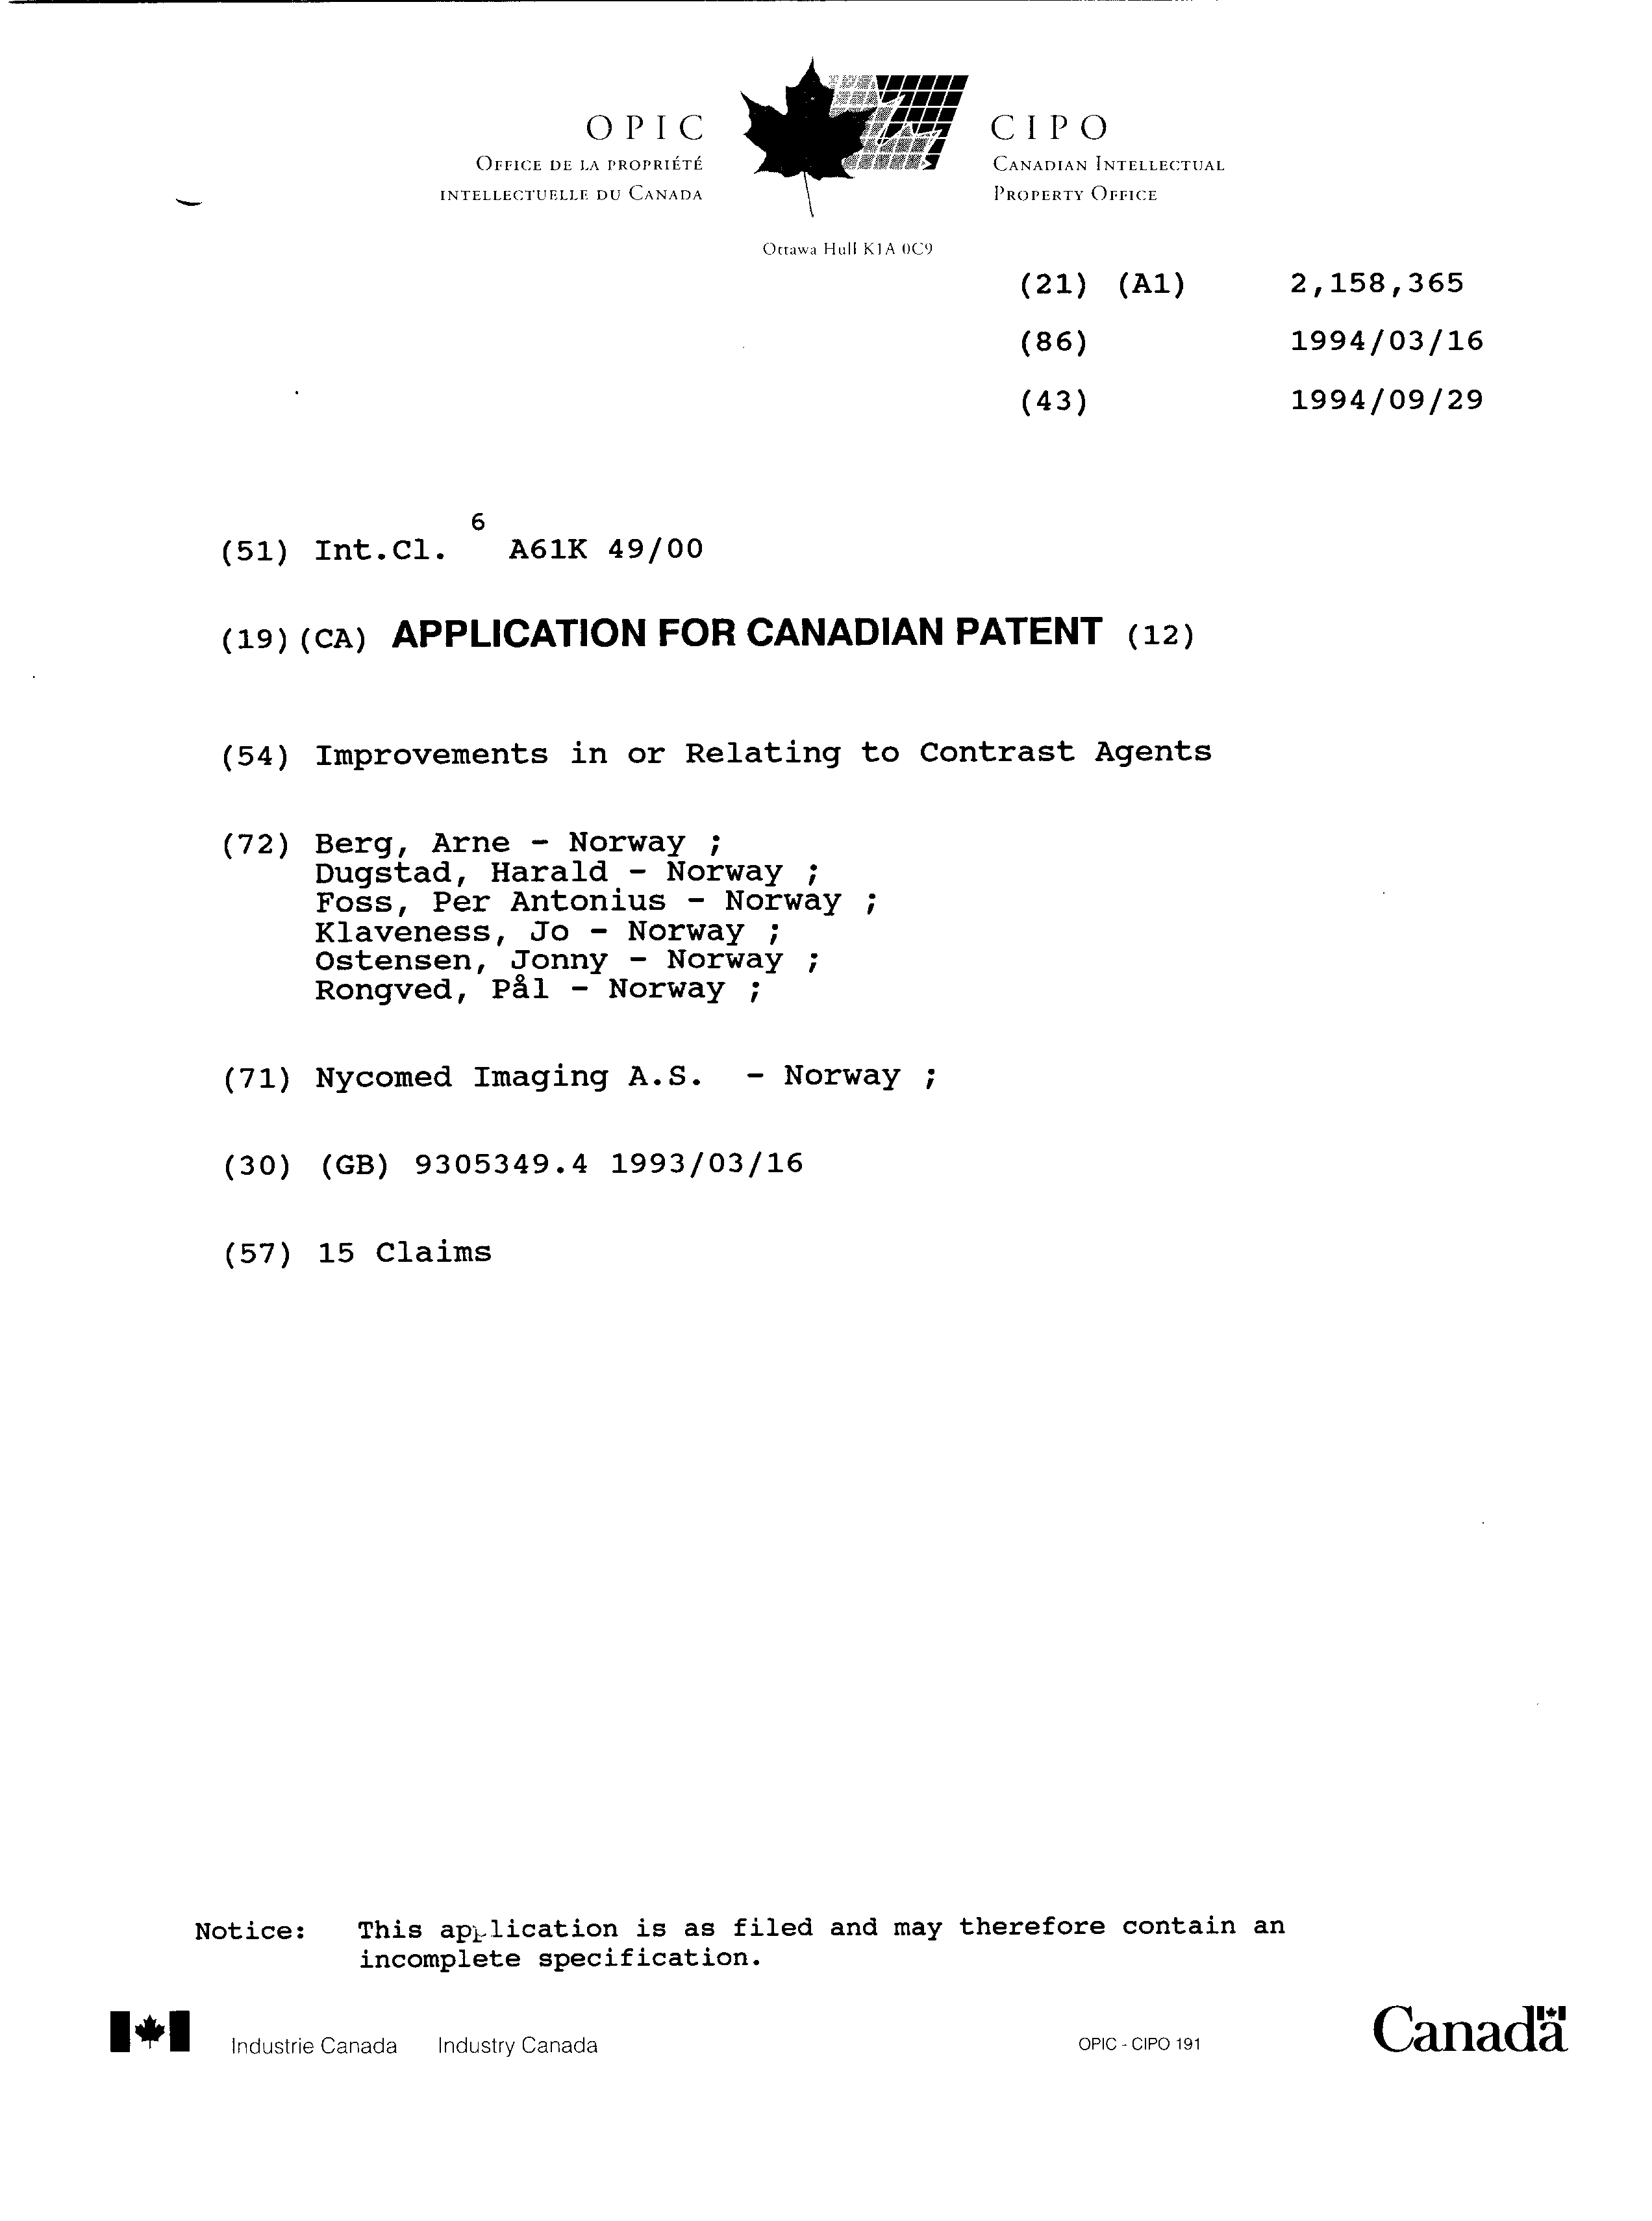 Document de brevet canadien 2158365. Page couverture 19951220. Image 1 de 1